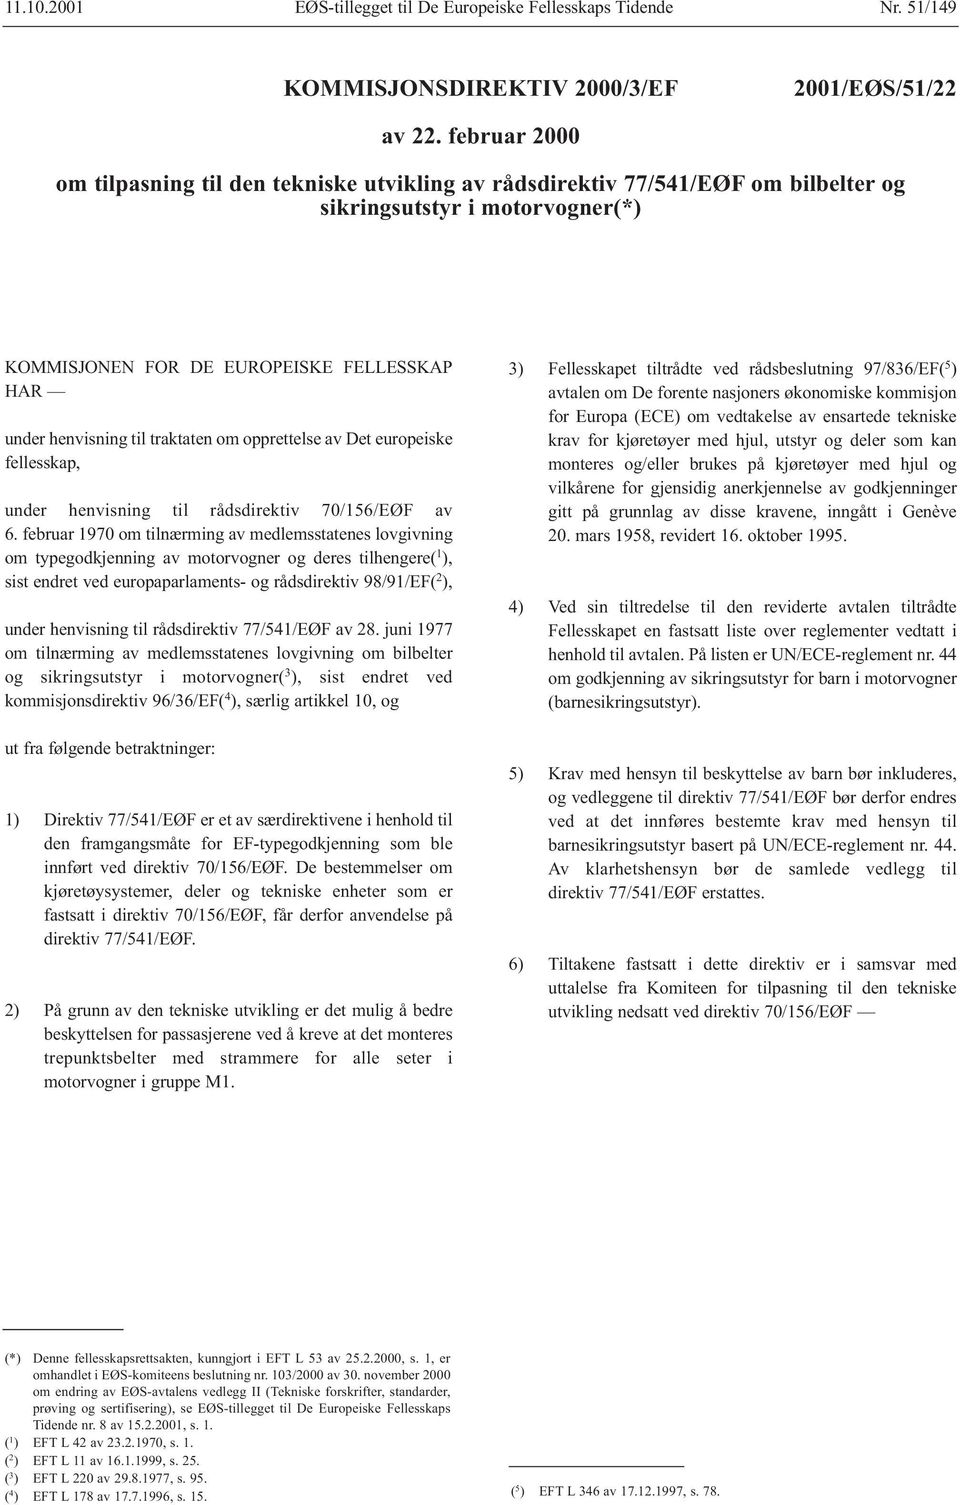 traktaten om opprettelse av Det europeiske fellesskap, under henvisning til rådsdirektiv 70/156/EØF av 6.